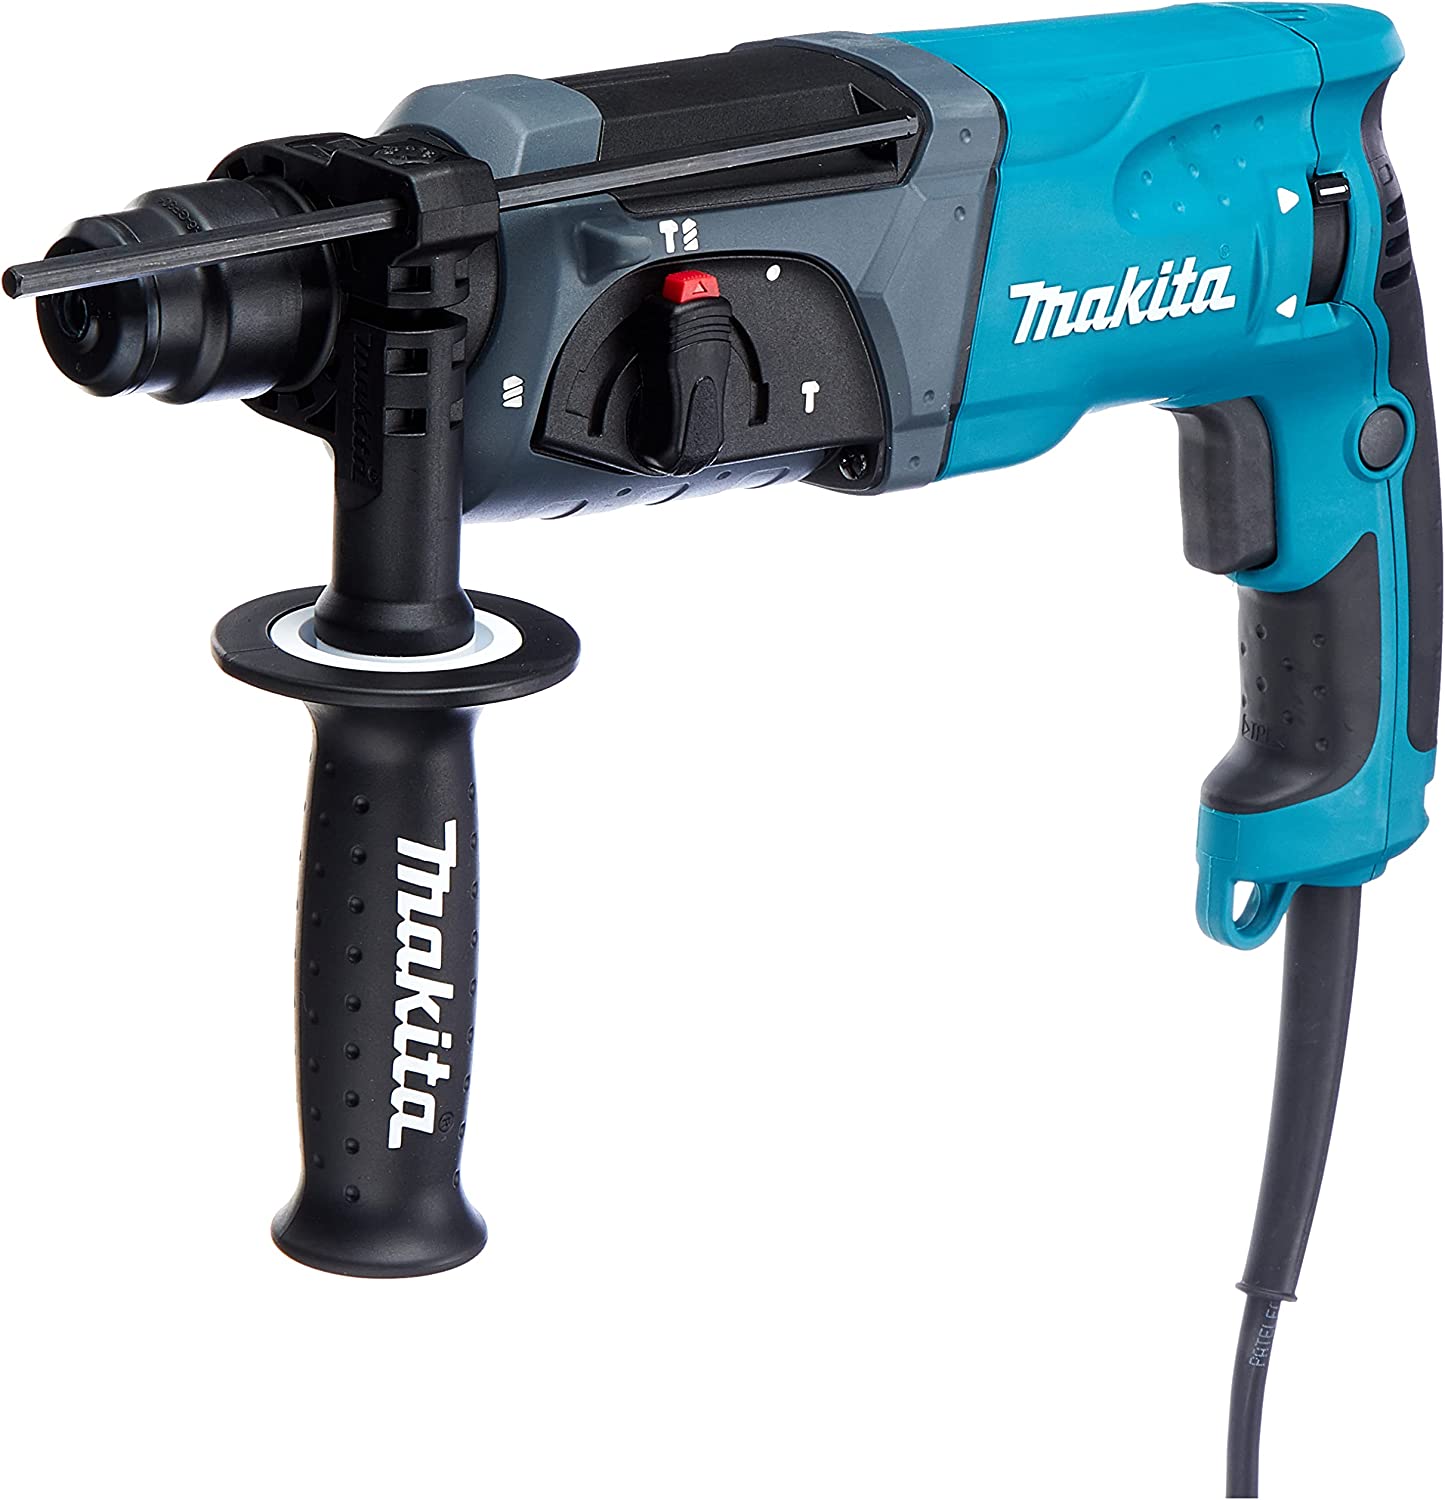 Makita HR2470 Bohrhammer für SDS-PLUS 24 mm